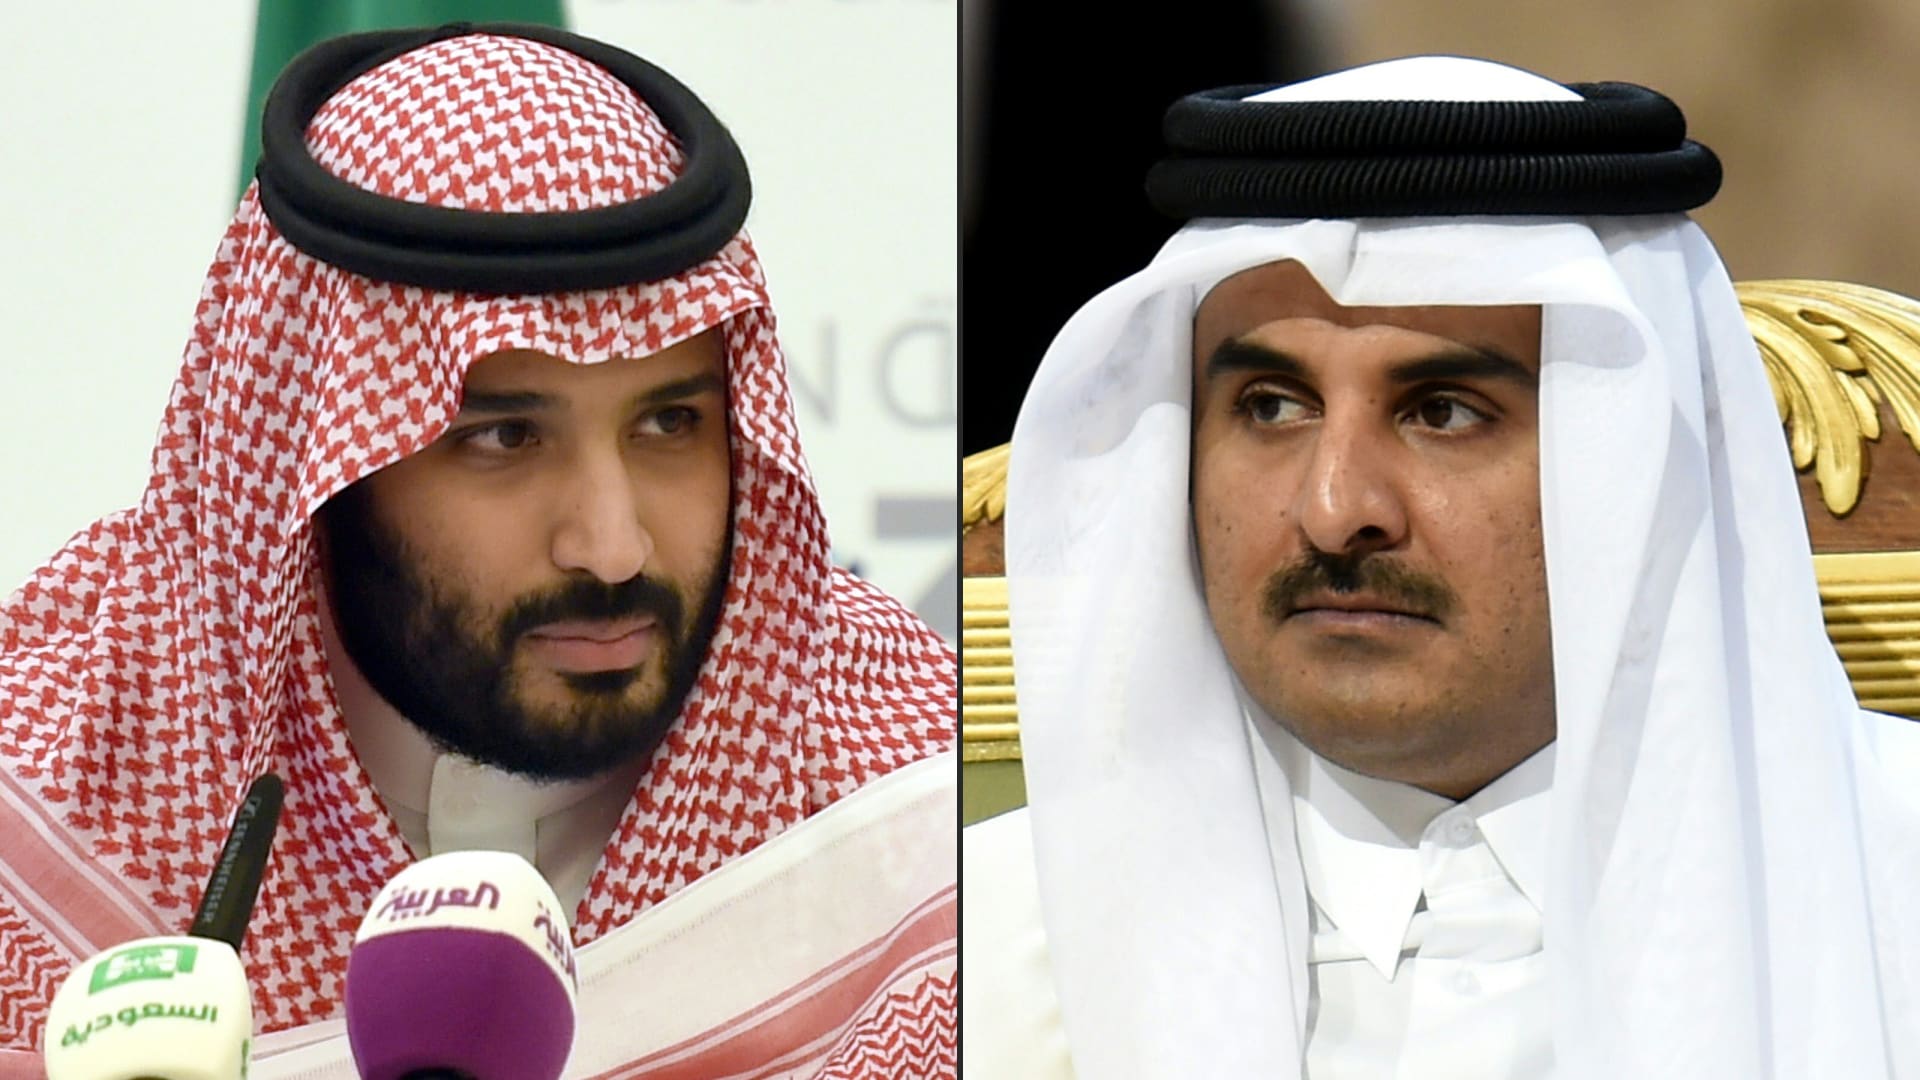 تفاعل على فيديو استقبال ولي العهد السعودي لأمير قطر عند السلم الطائرة.. فماذا قال له؟